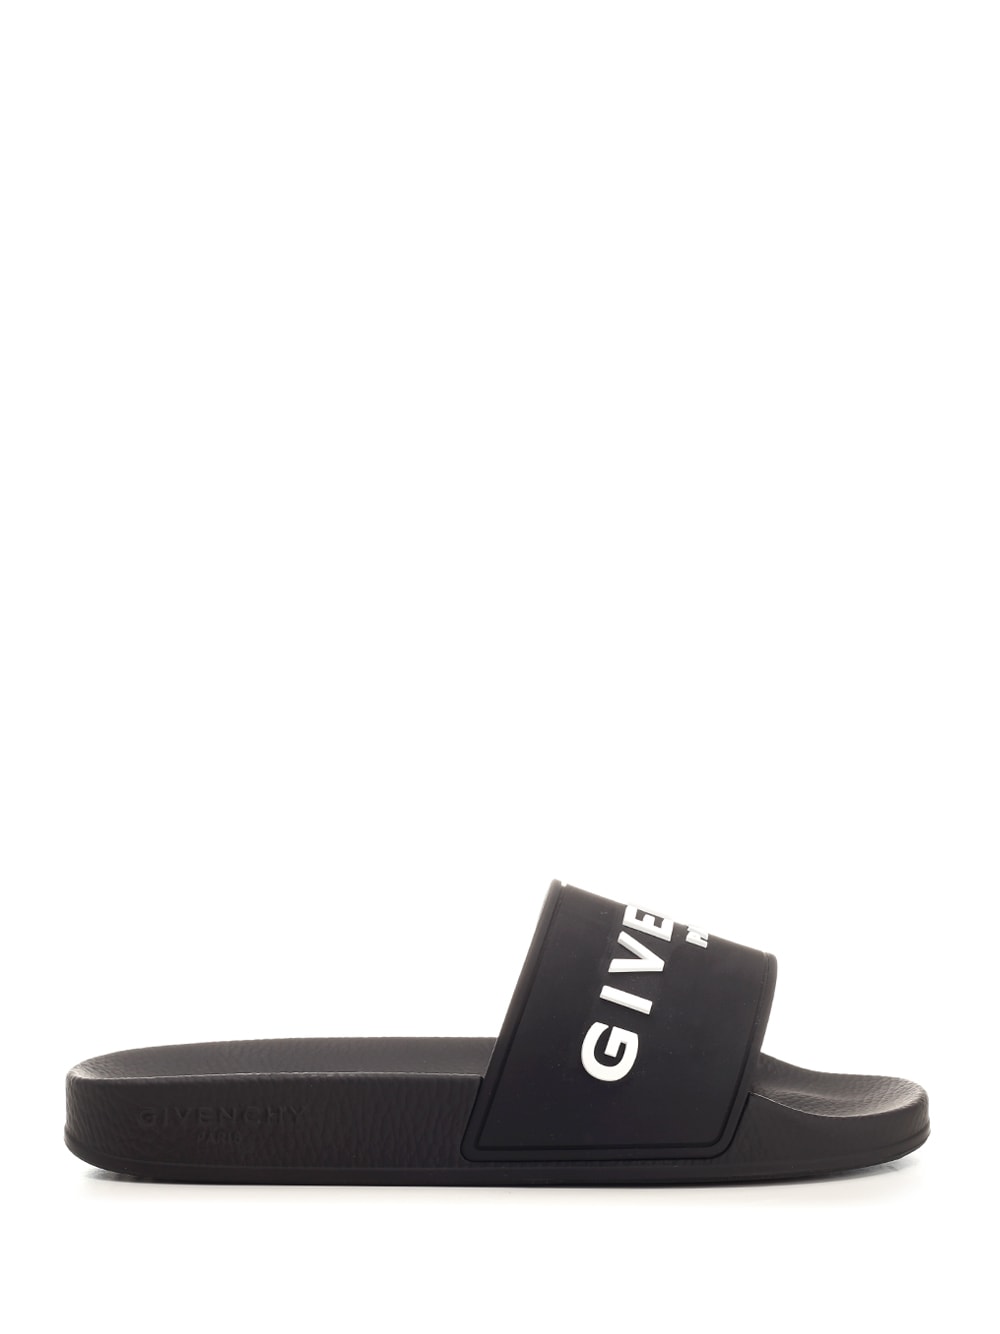 Shop Givenchy Rubber Slide In Black